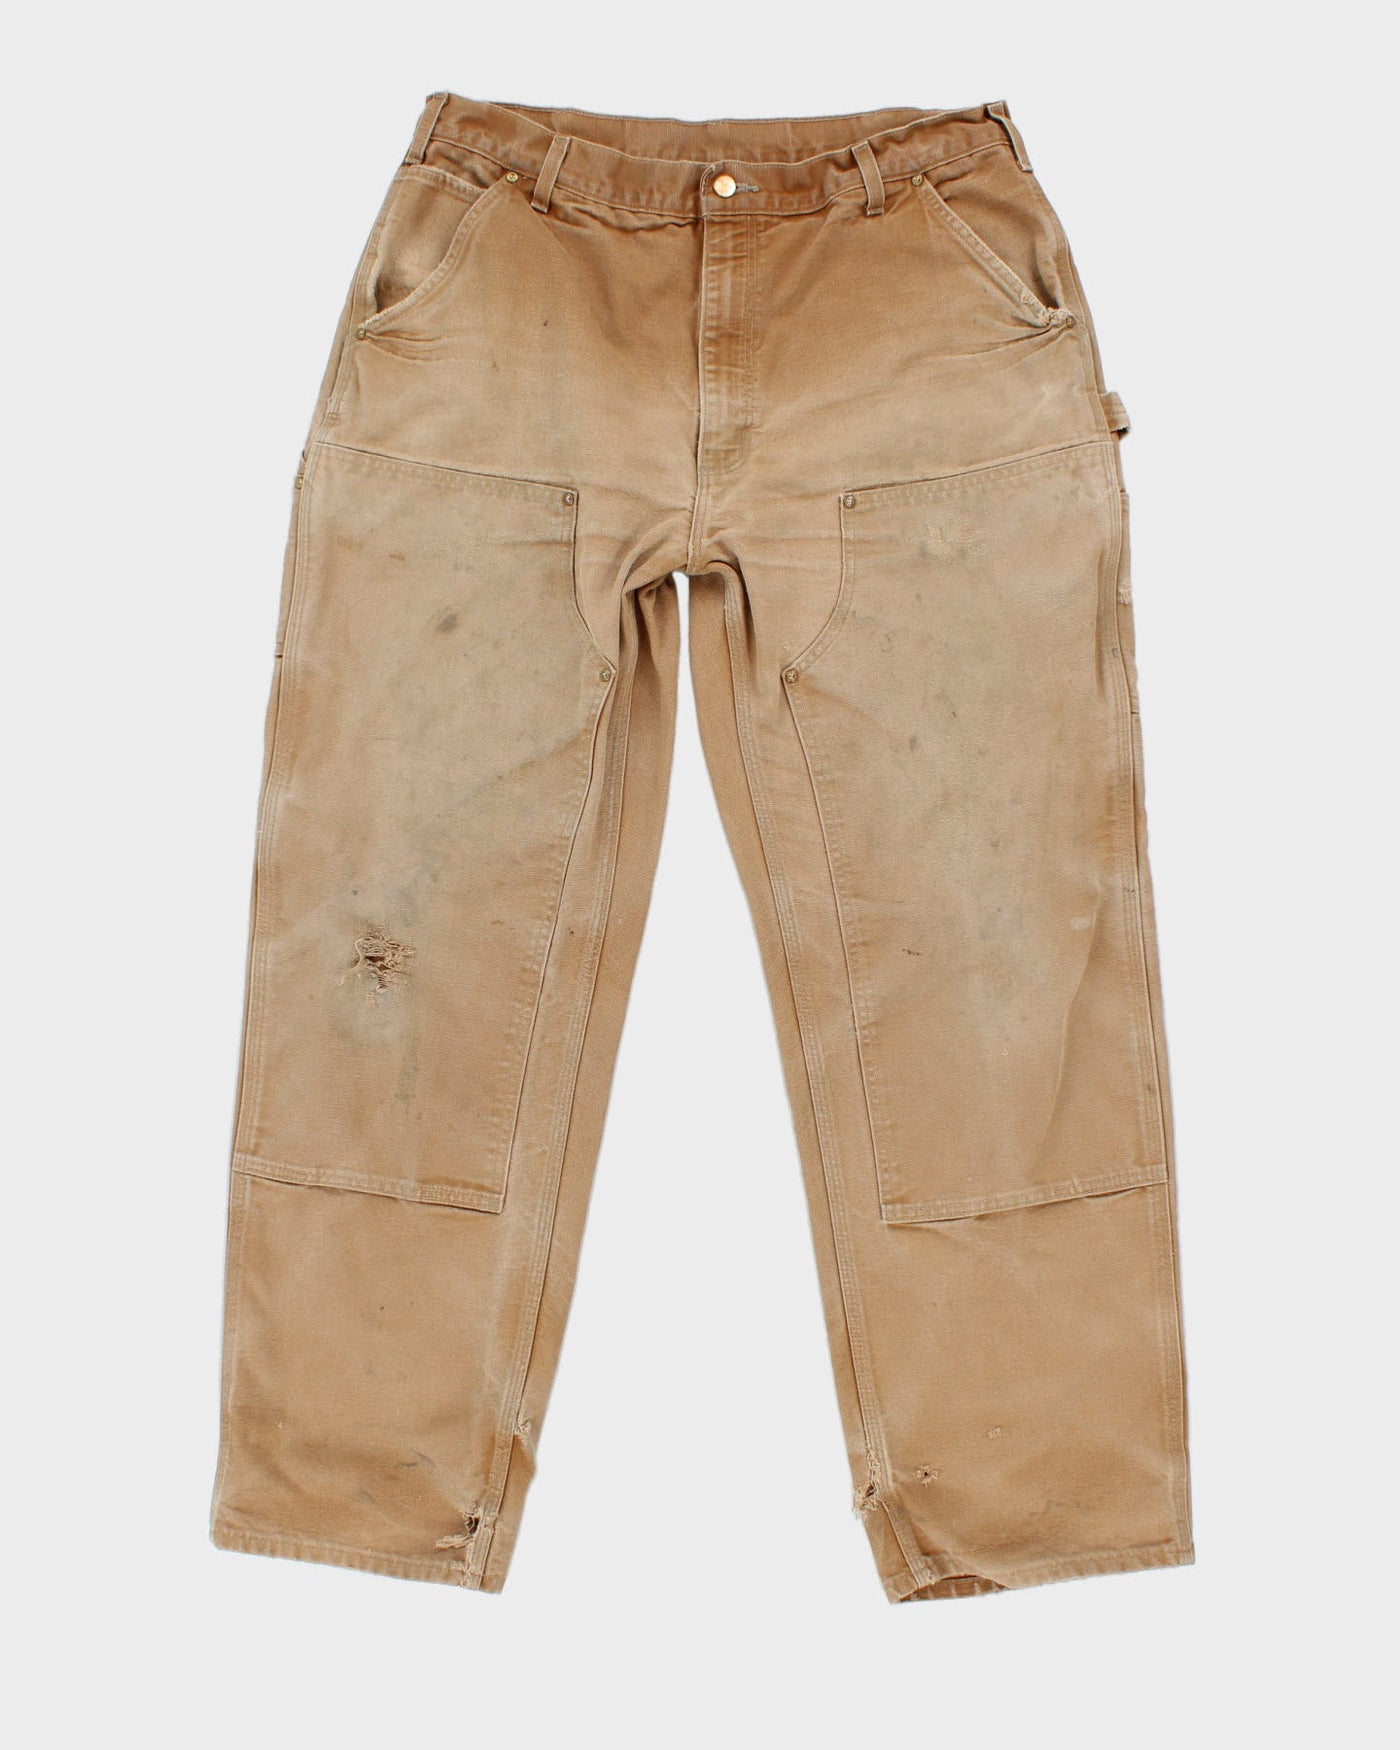 Thrashed Carhartt Workwear Trousers - W36 L36 – Rokit